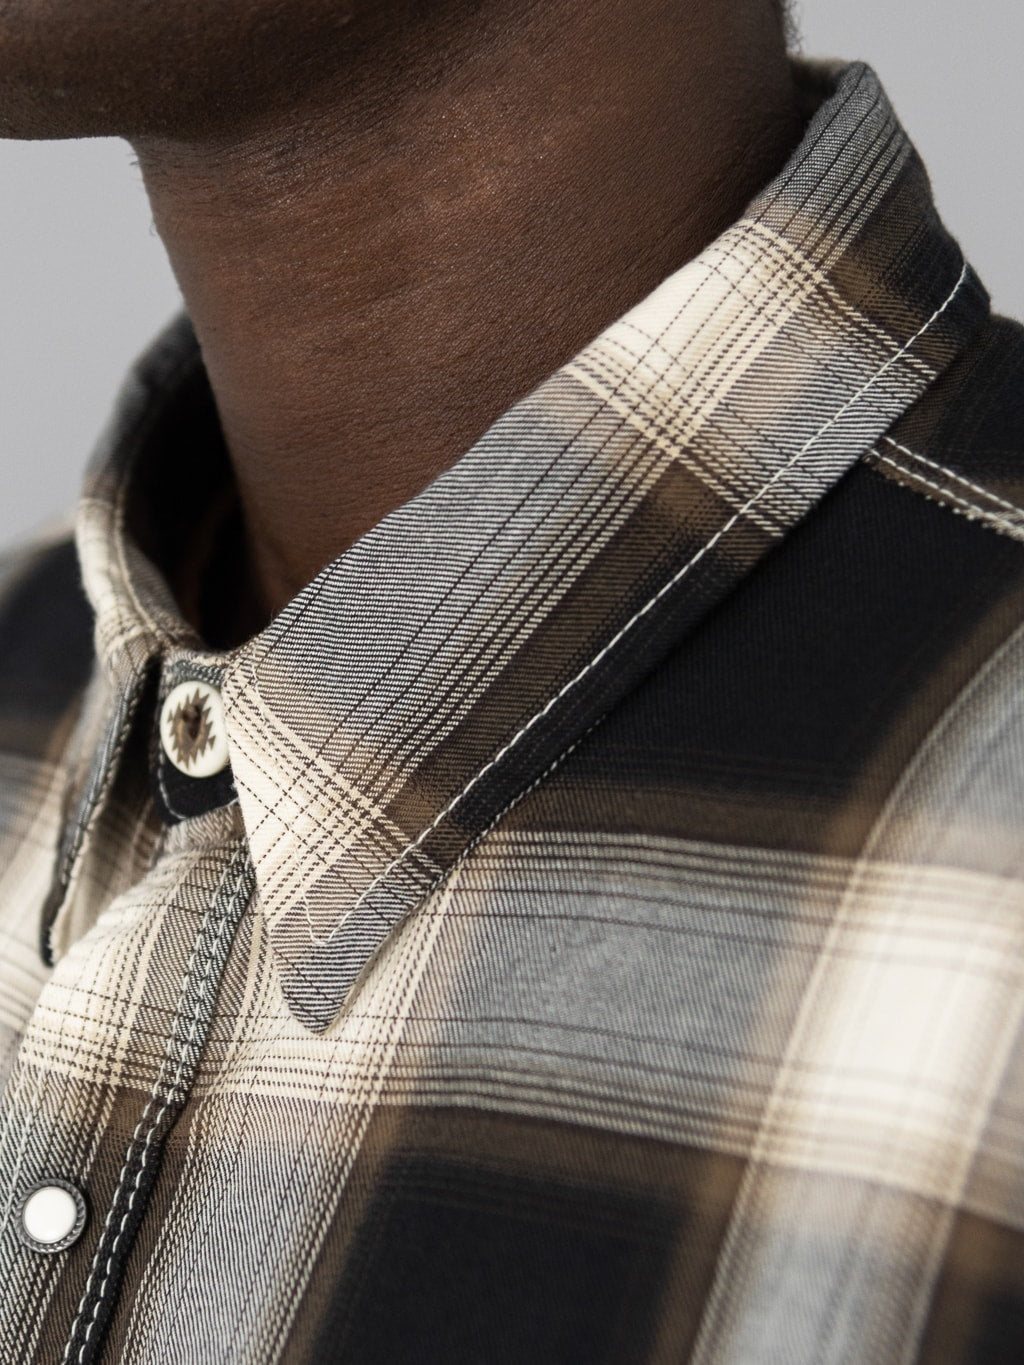 Freenote Cloth Lancaster Black Shadow Plaid Shirt collar